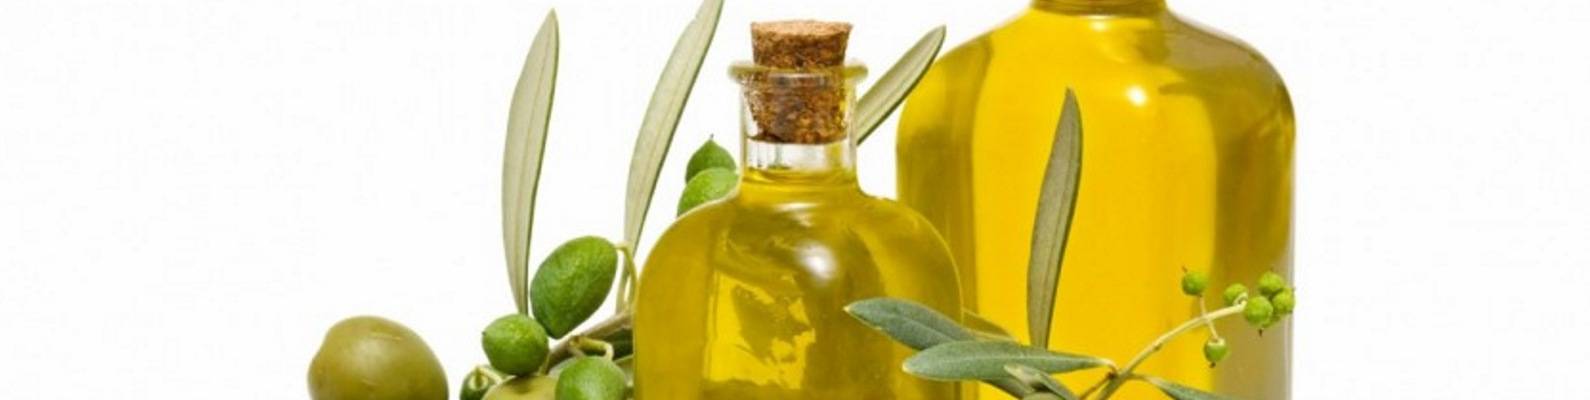 Можно ли при беременности кушать оливки и маслины, есть ли ограничения?